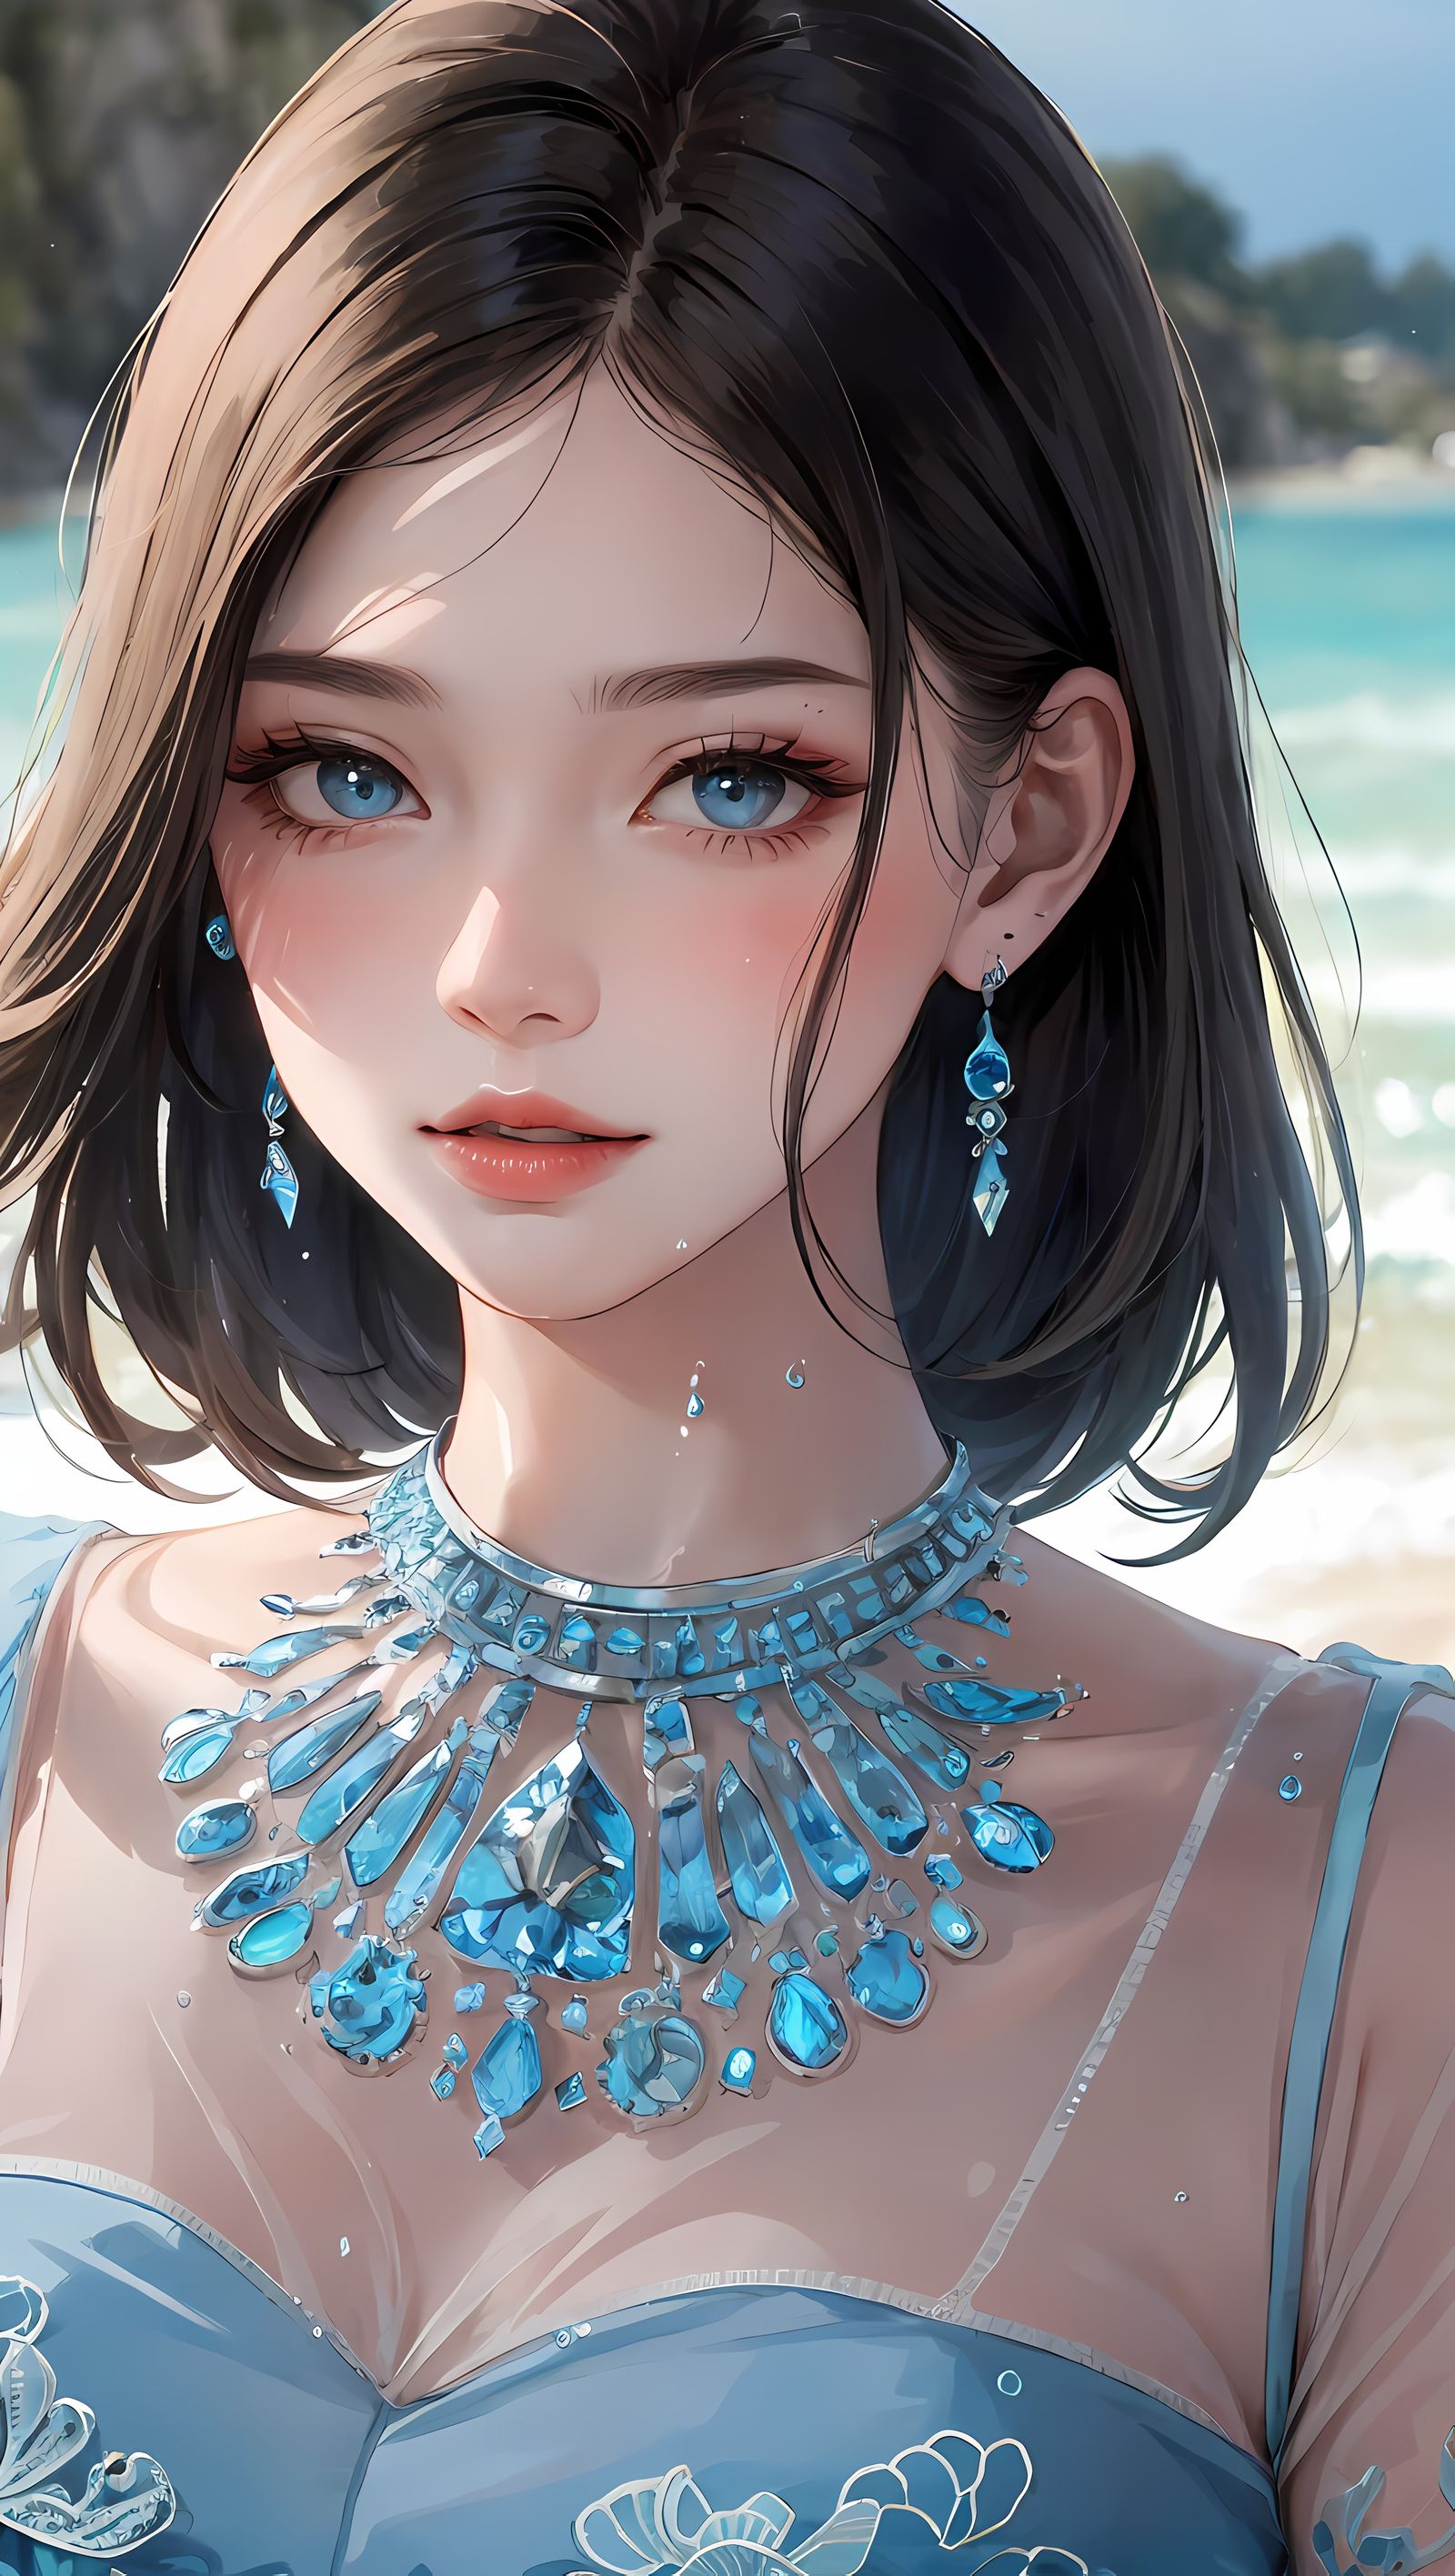 沙滩上的一只鹭，插满了珠宝，蓝眼黑发美少女盯着你看